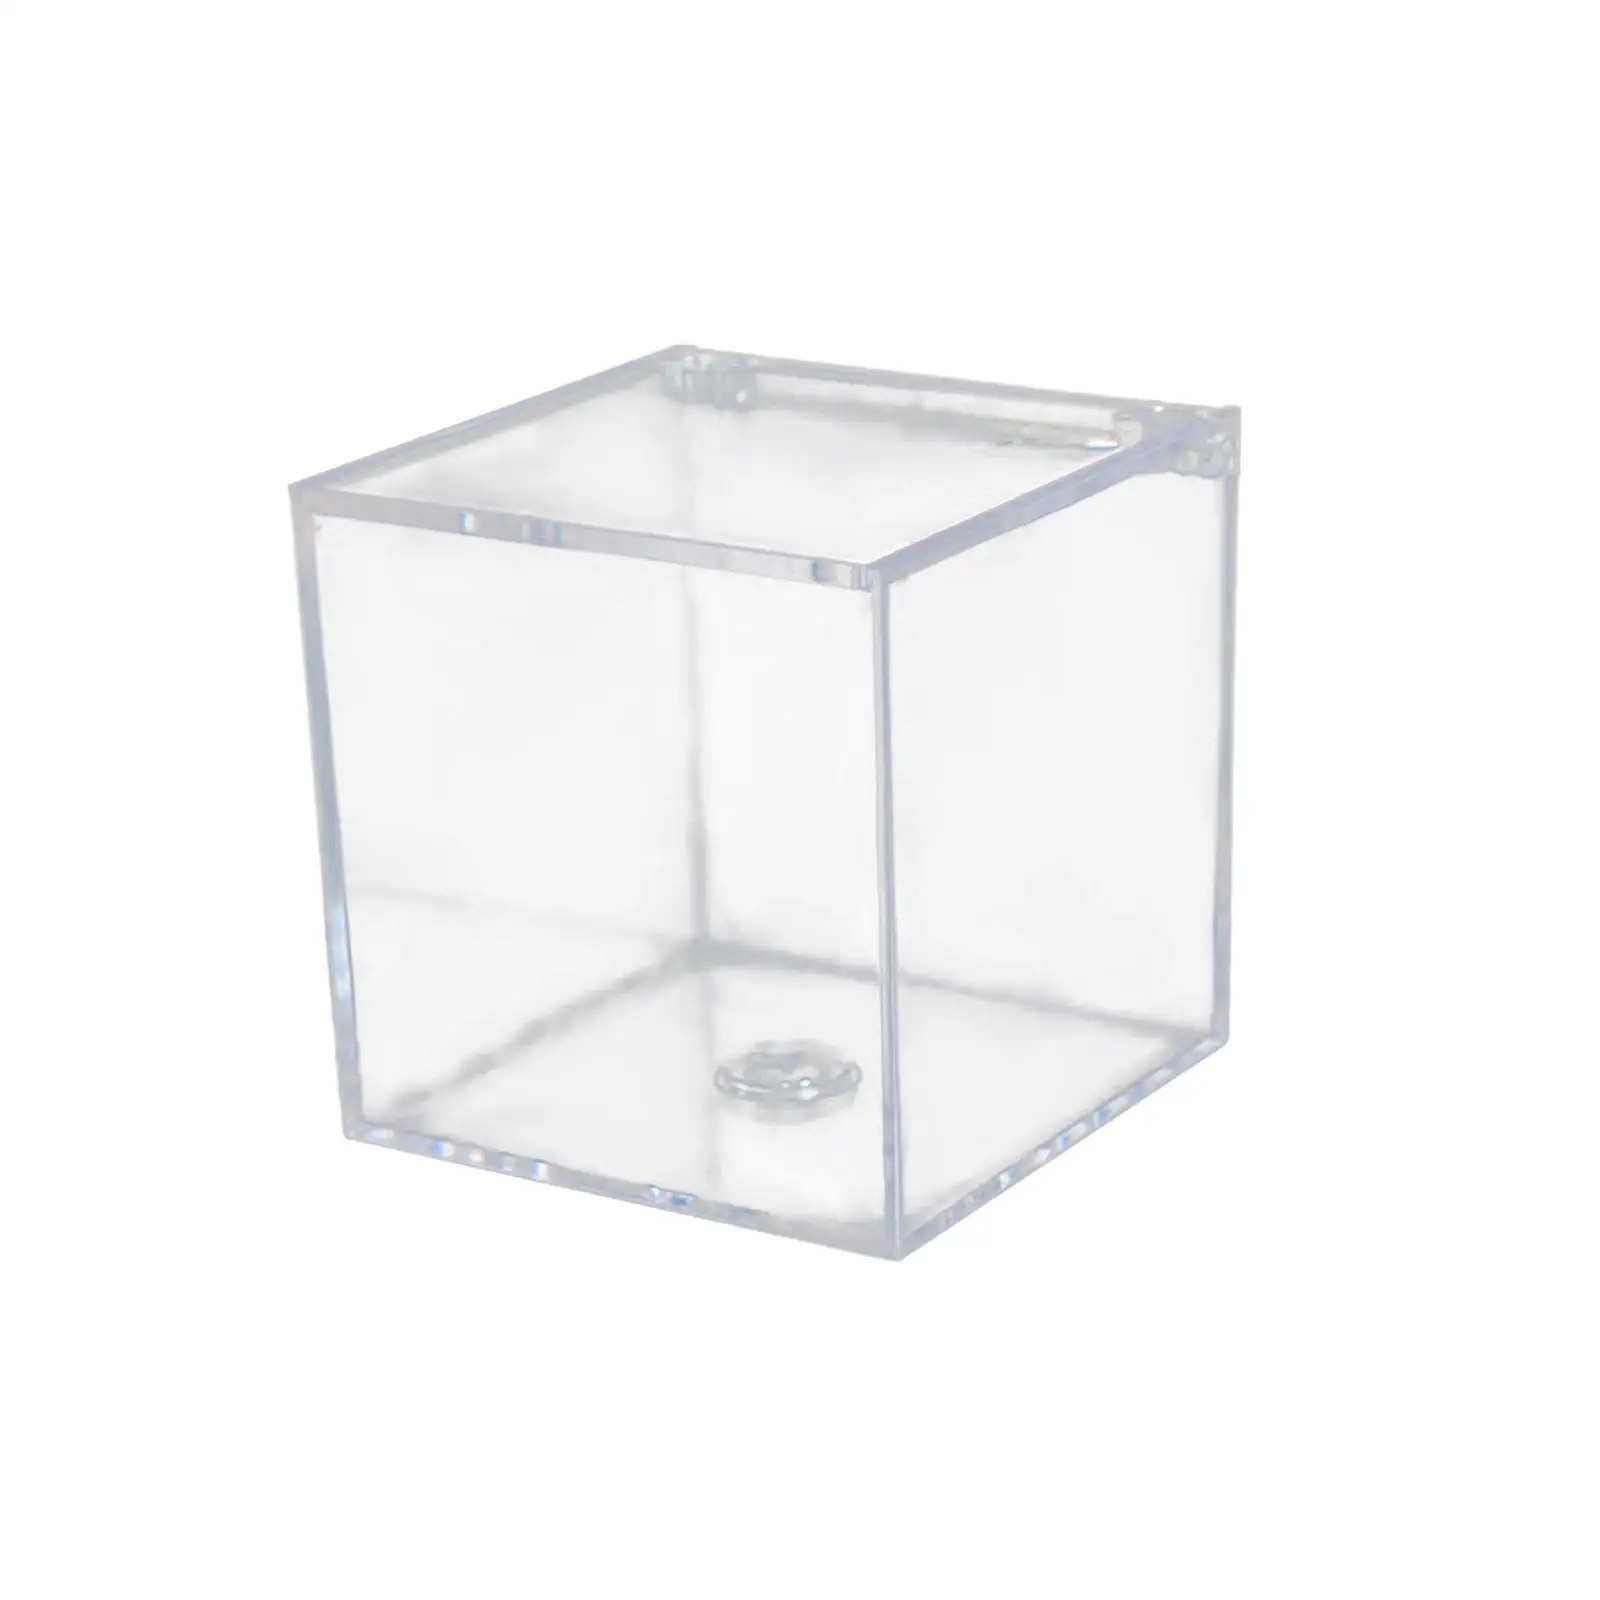 Acrylic Clear Box Gift Box with Lids Jewelry Box storage Box for Tiny Jewelry Centerpiece Cosmetics Birthday Decoration